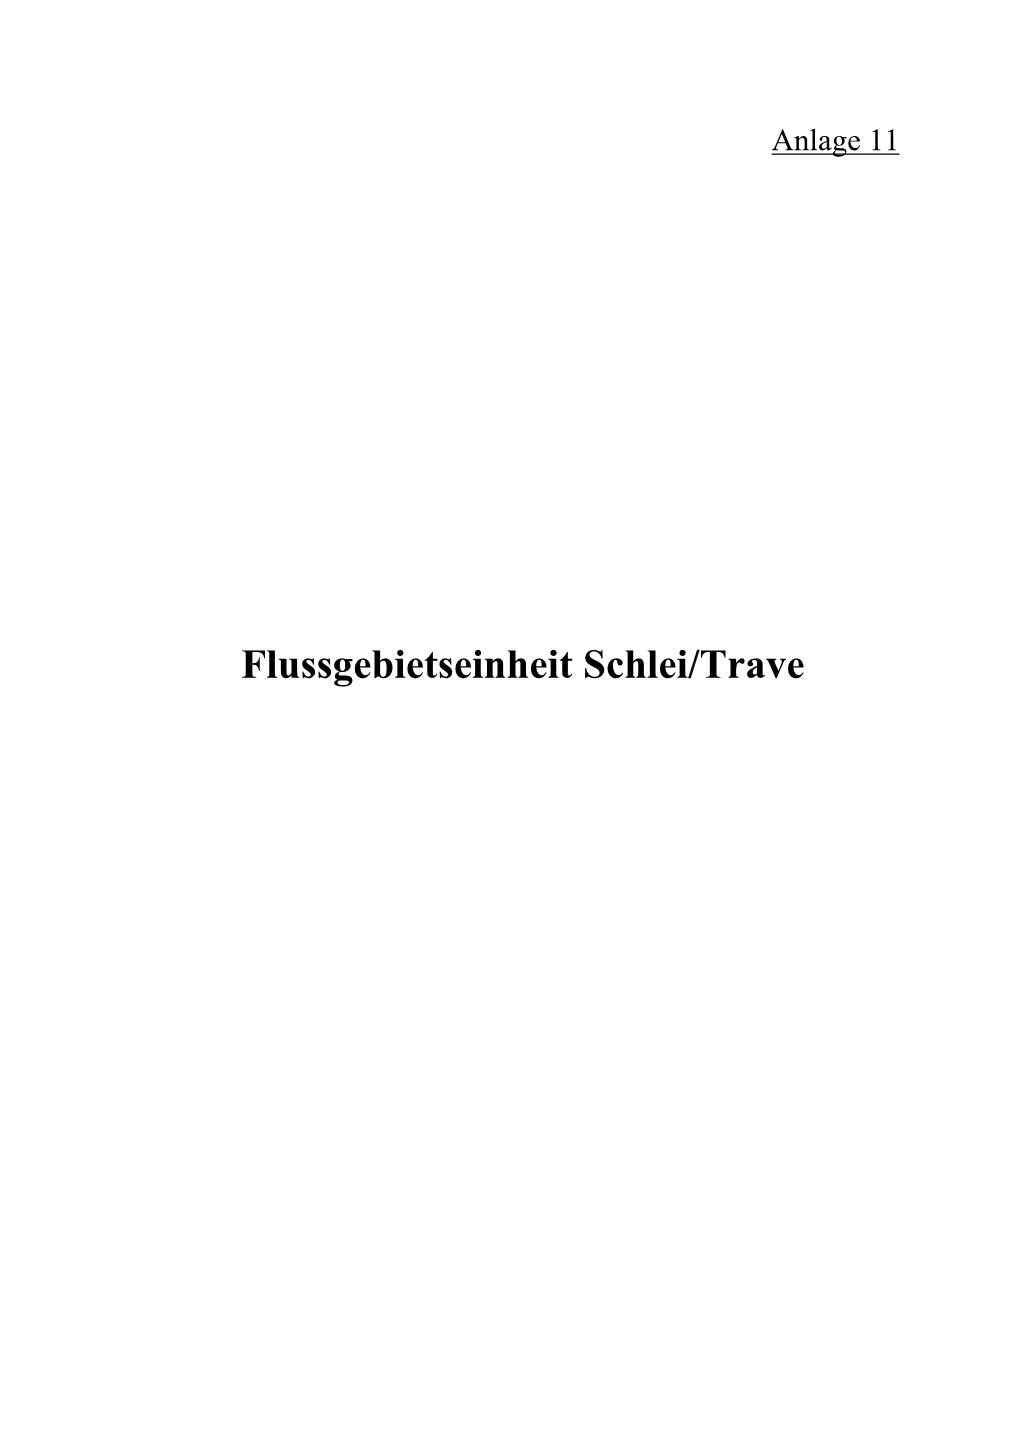 WRRL-Bericht Anlage 11: Flussgebietseinheit Schlei/Trave